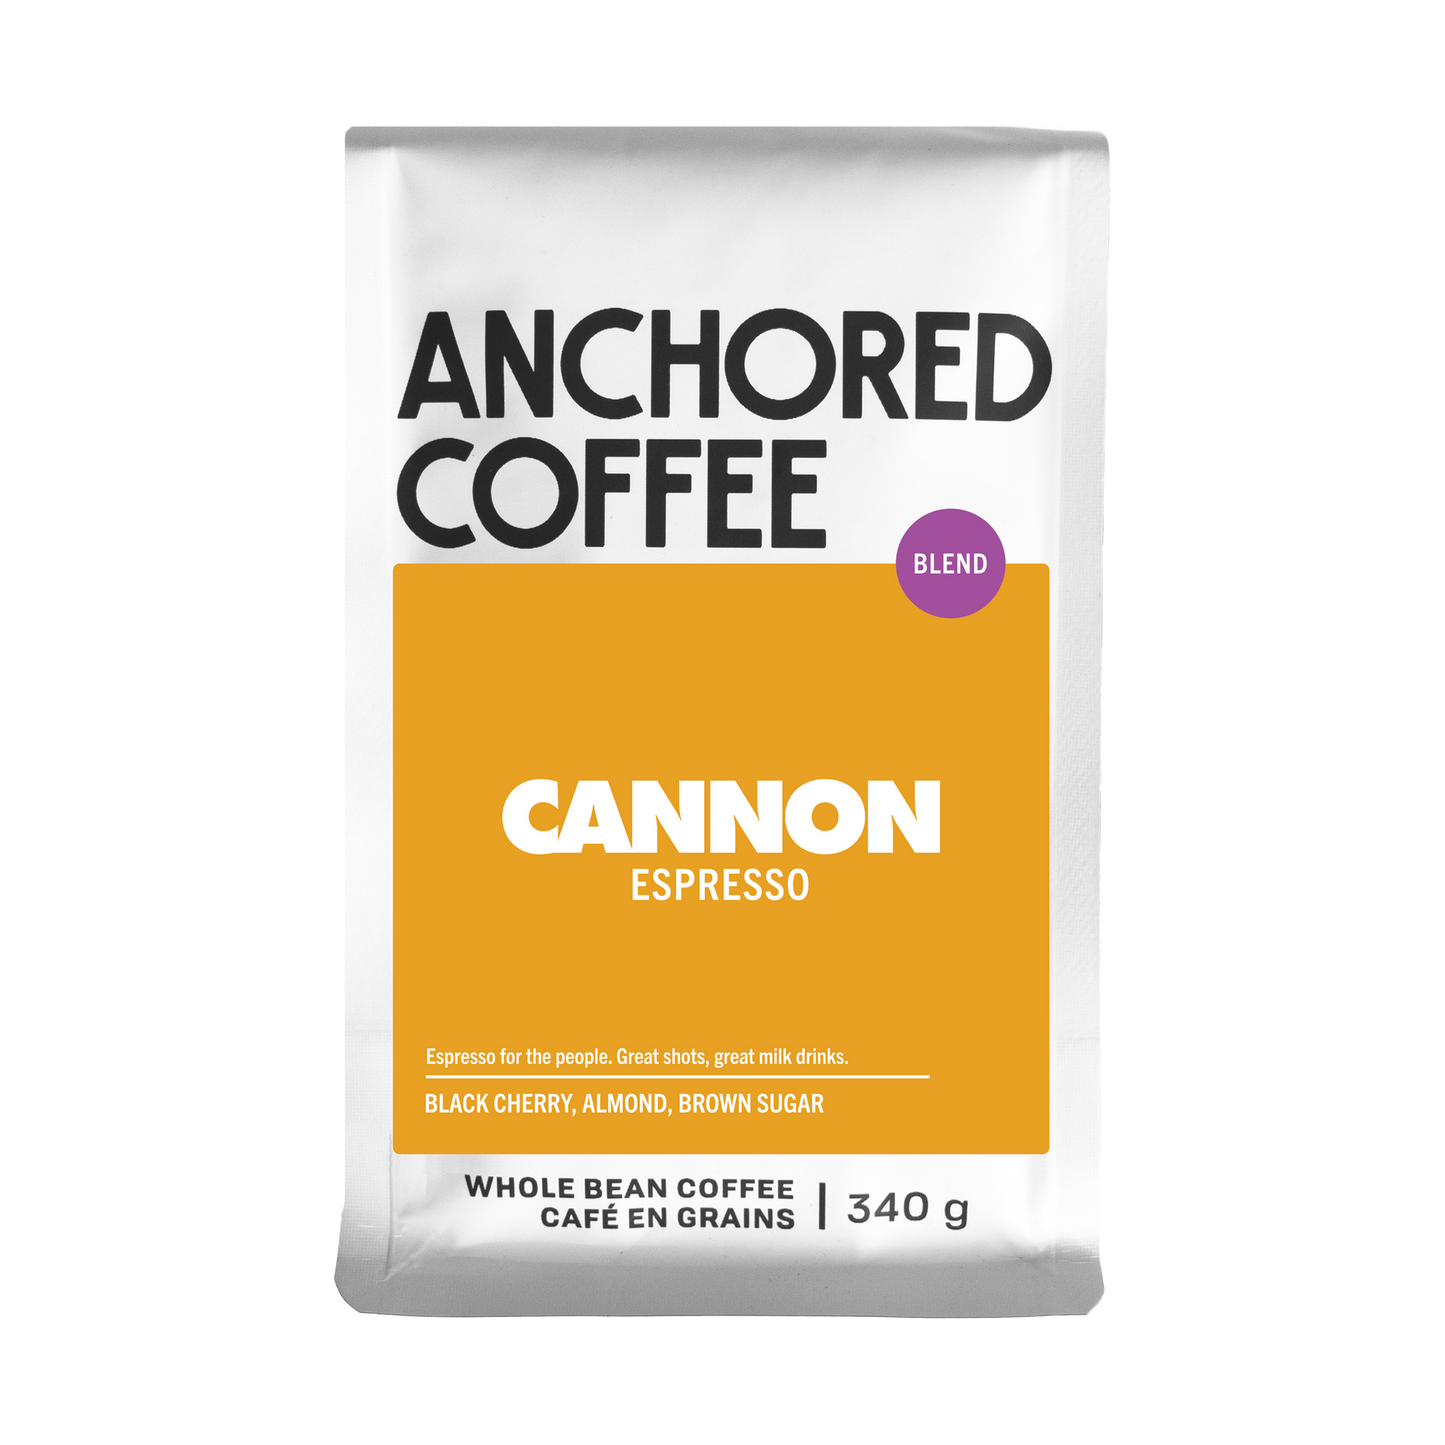 Cannon Espresso